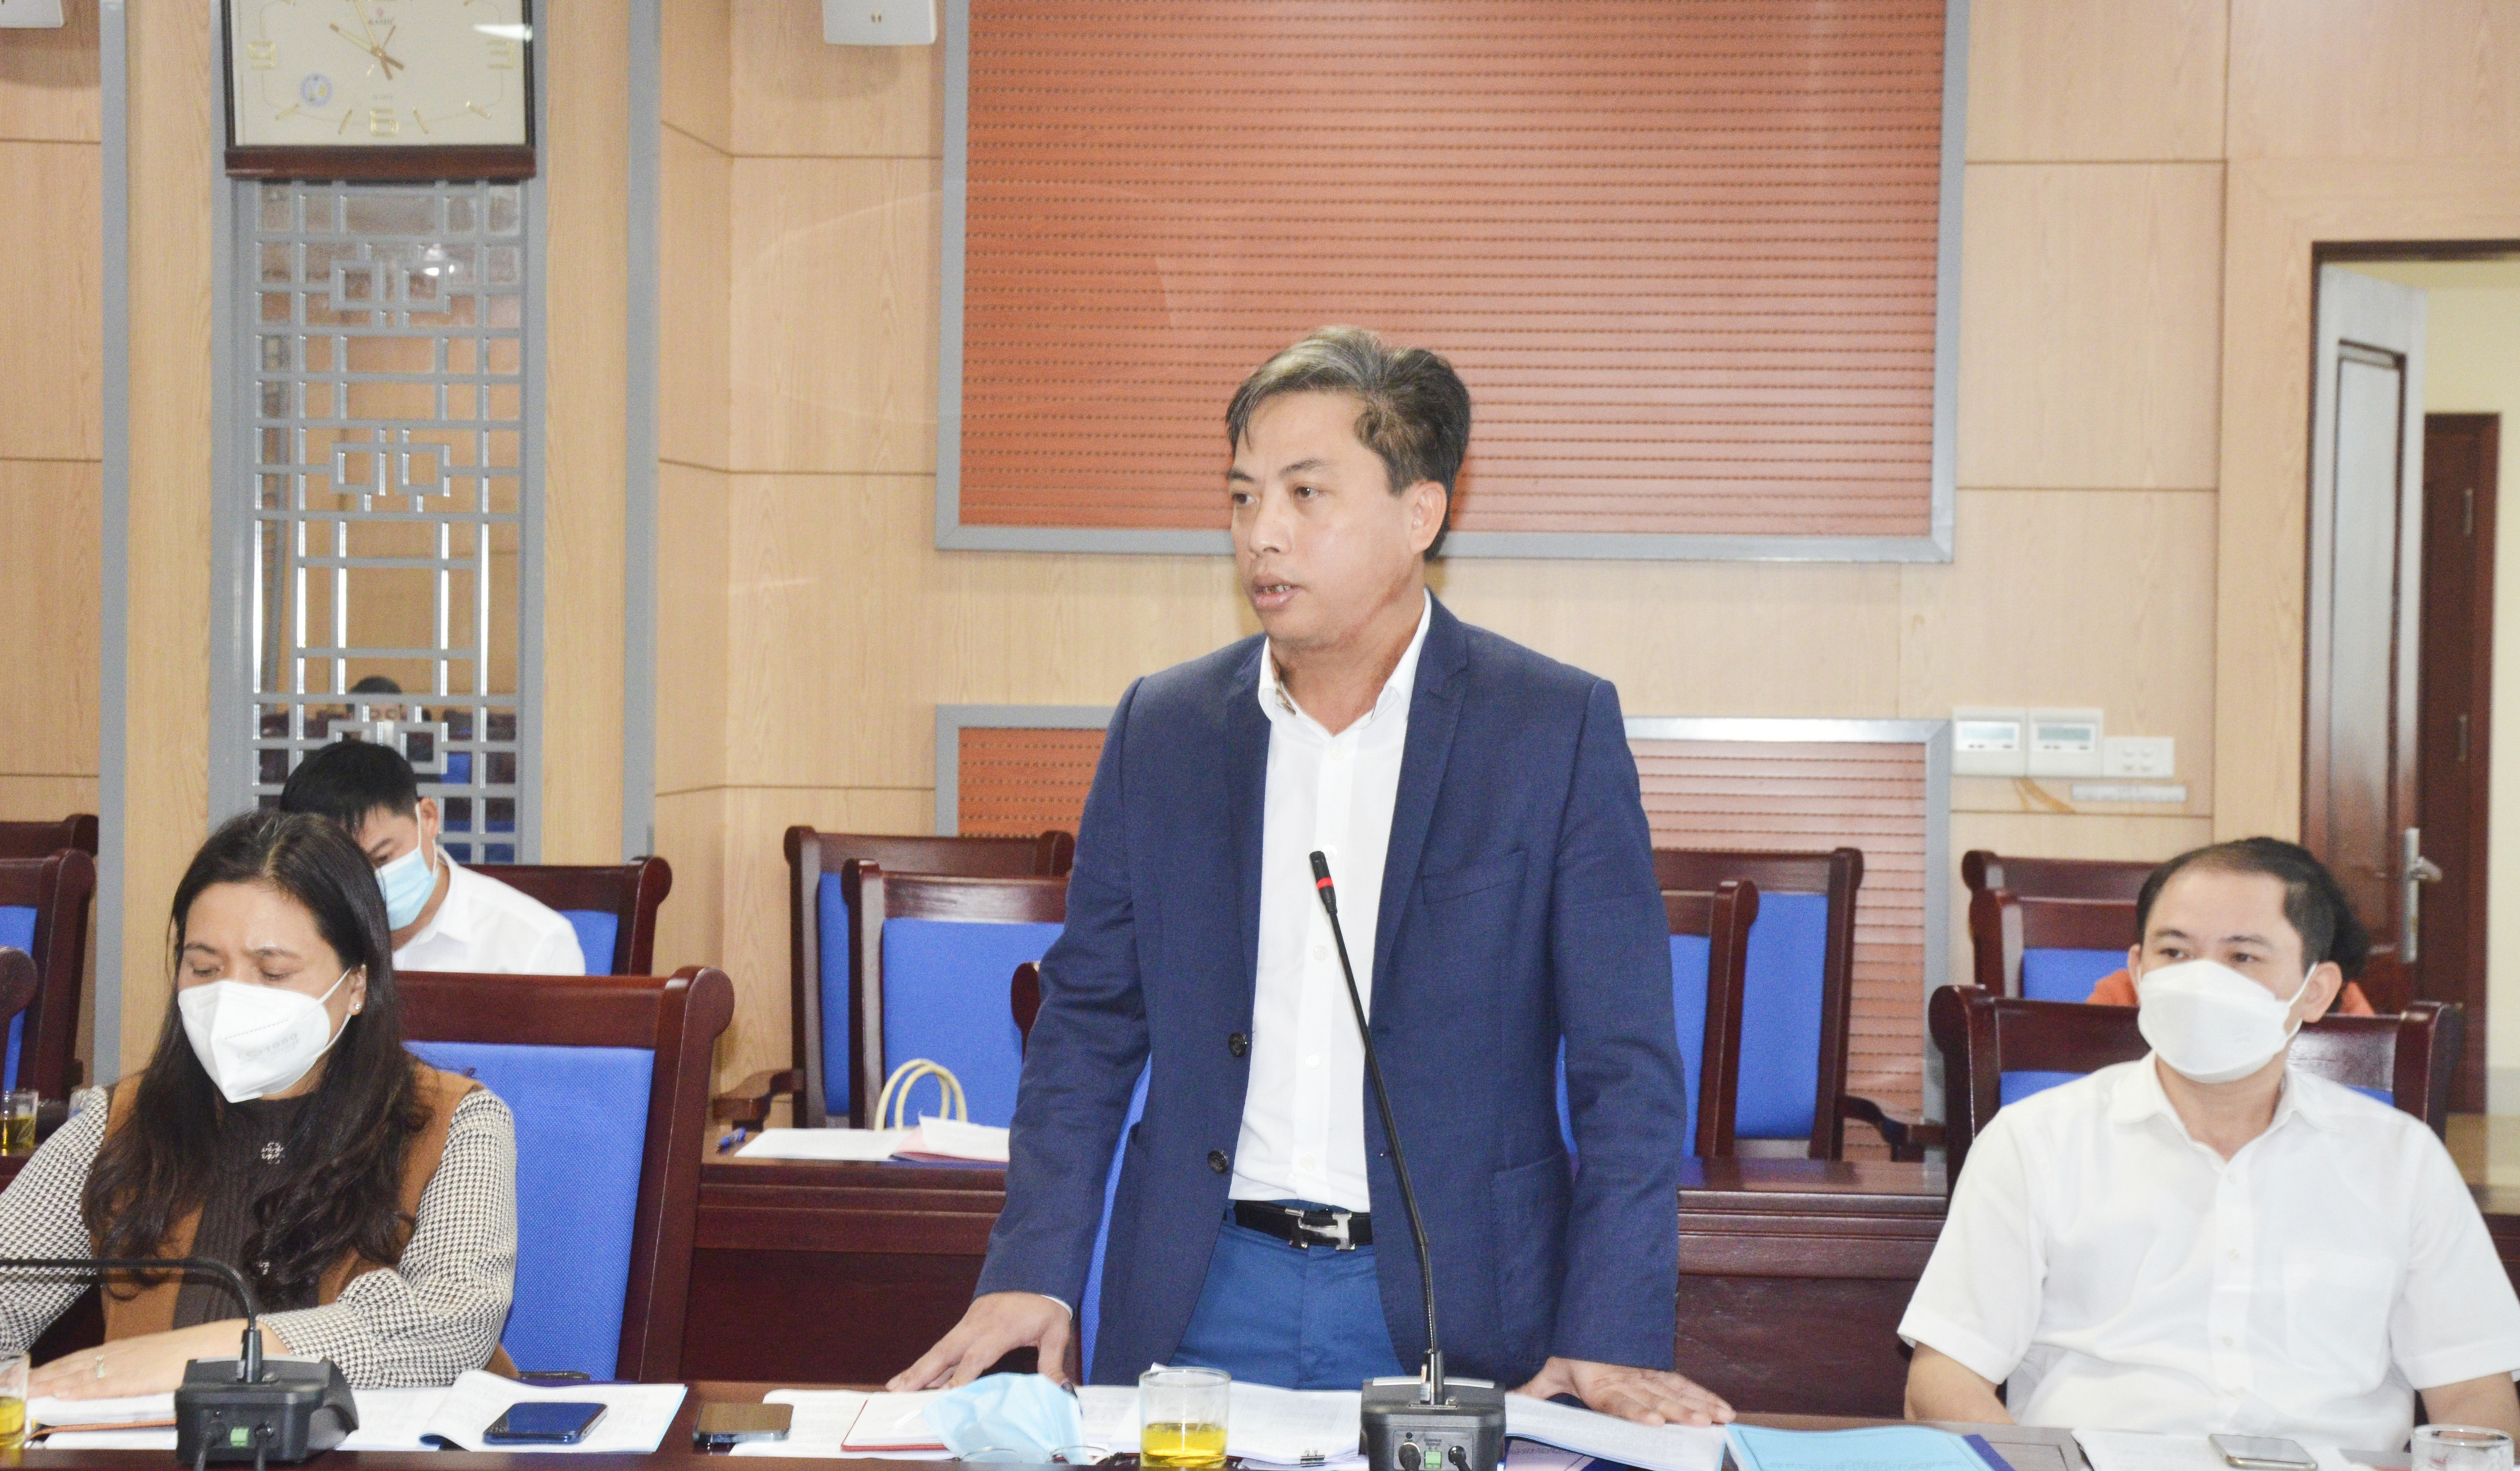 Phó Giám đốc Sở Tài chính Nguyễn Thanh Tùng làm rõ các quy định ban hành về mức thu phí. Ảnh: Thanh Lê